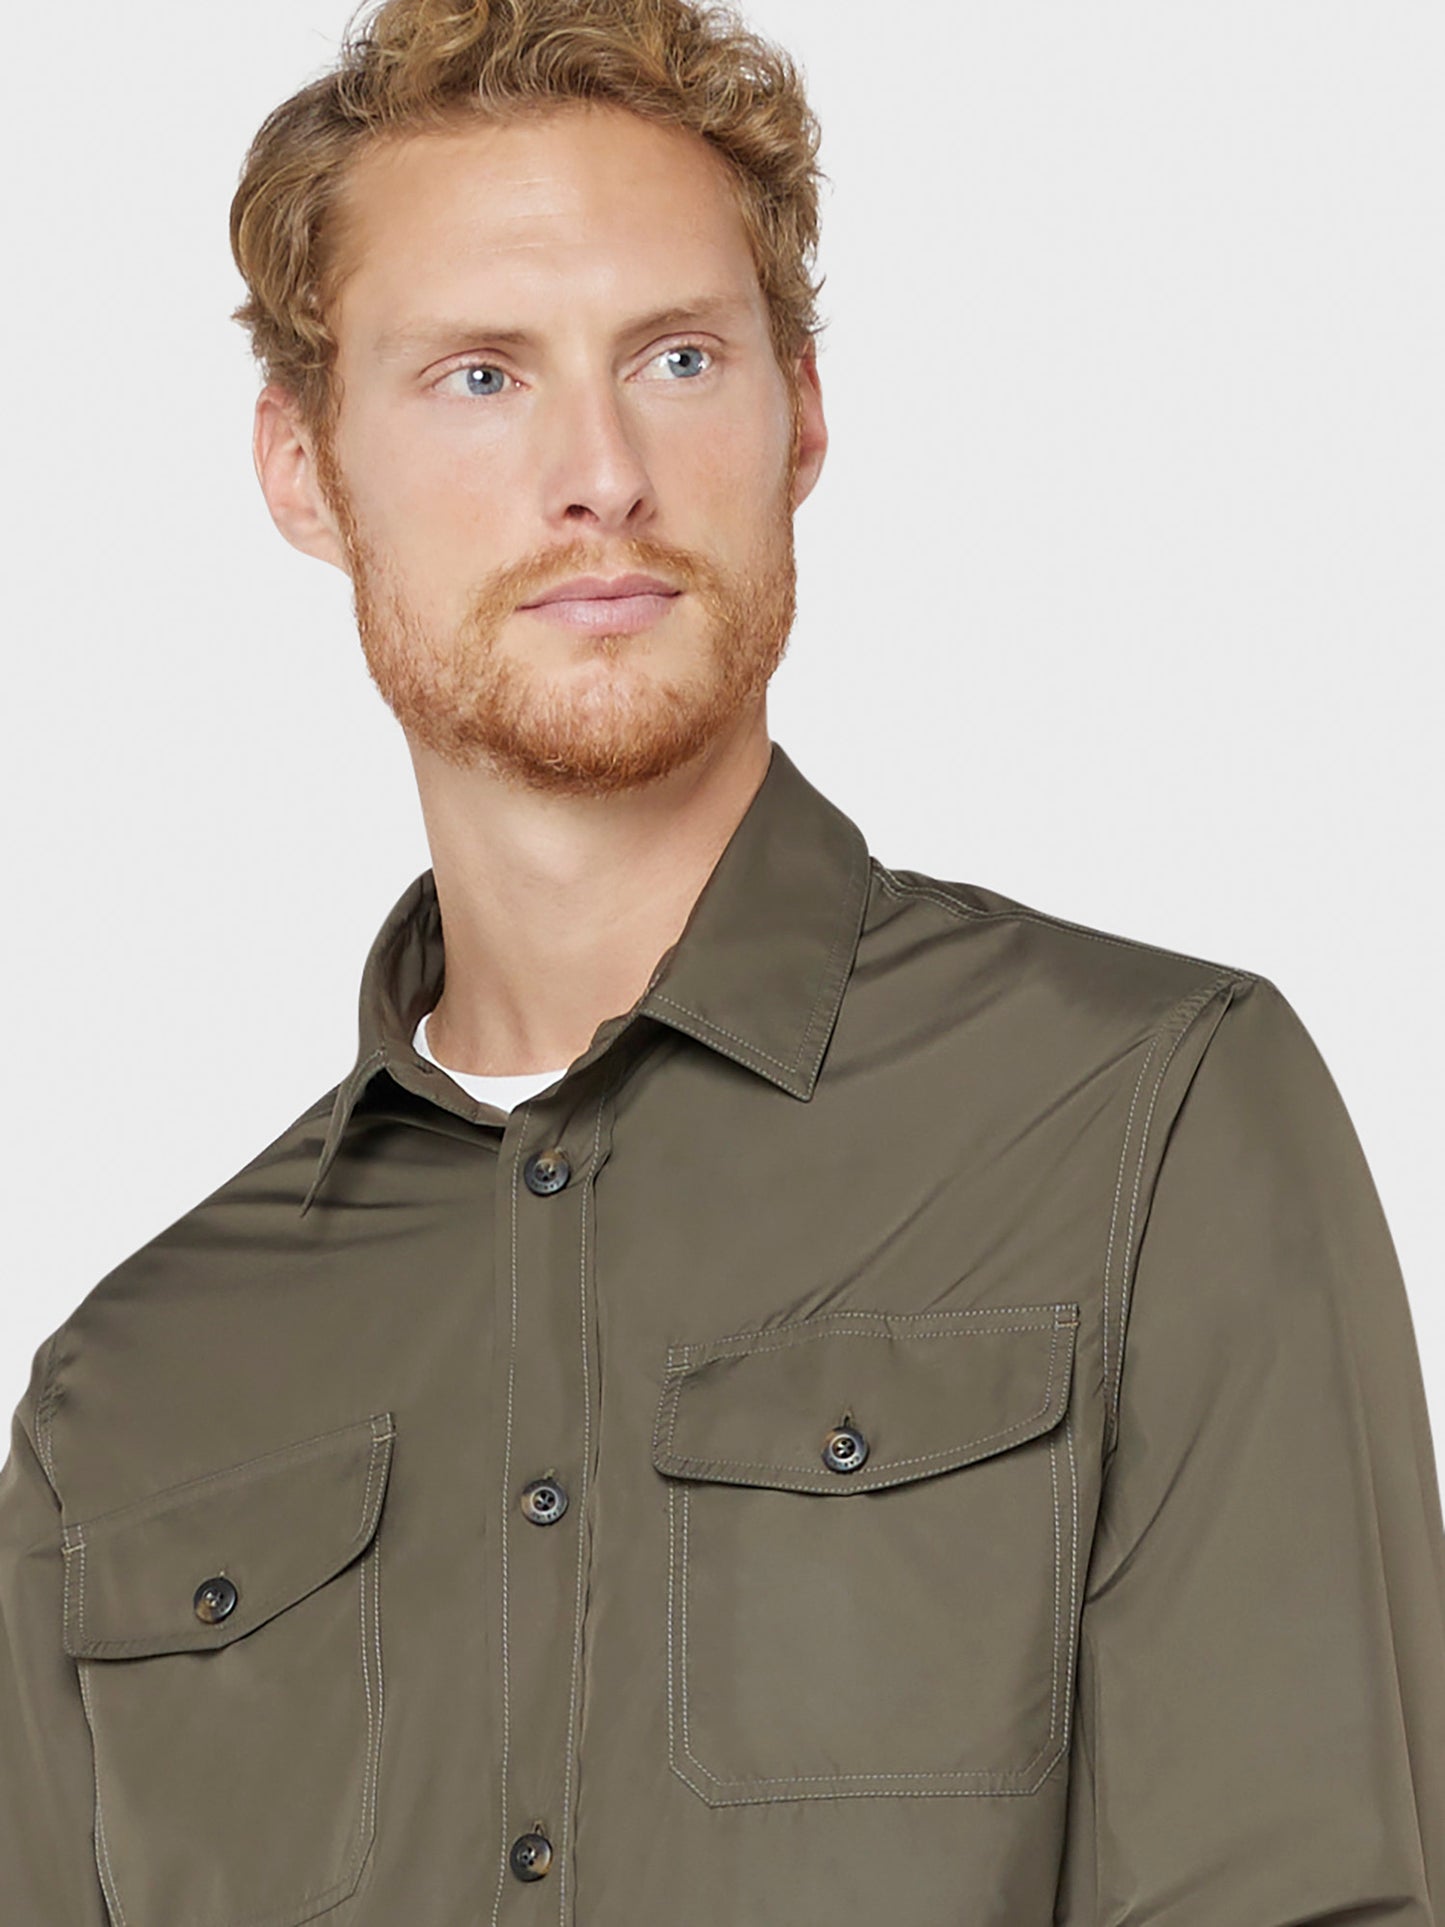 Caruso menswear Abbigliamento Uomo Overshirt estiva in nylon ultra leggero verde militare dettaglio